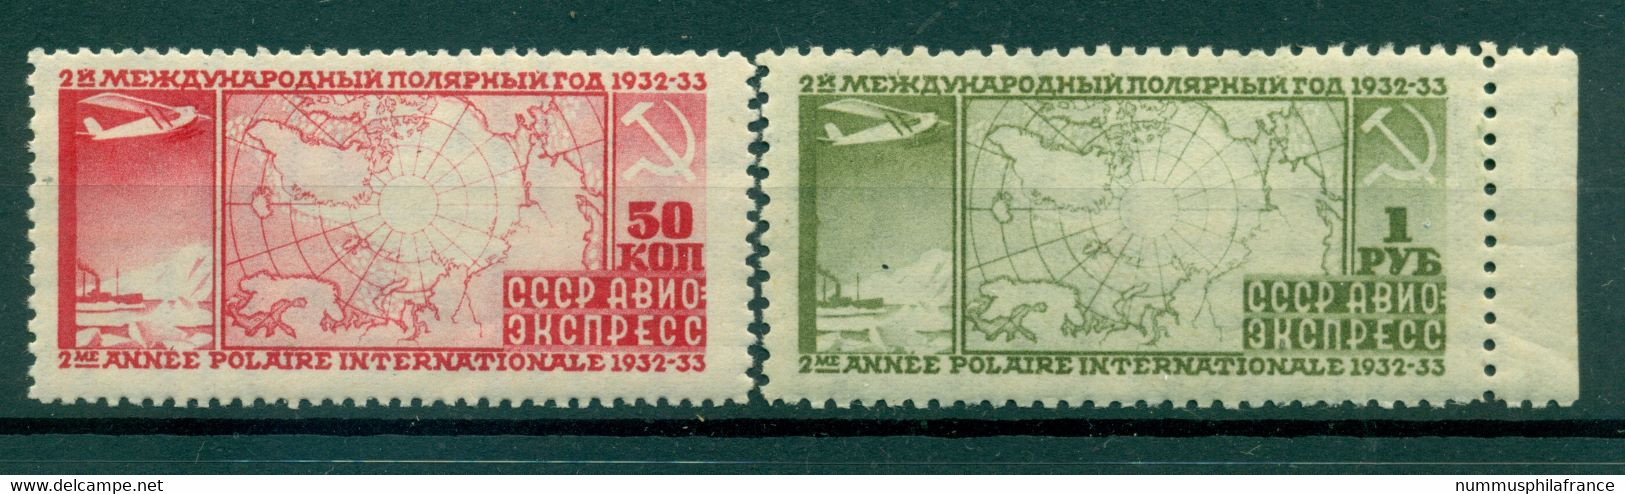 URSS 1932 - Y & T N. 31/32 Poste Aérienne - 2e Année Polaire Internationale (Michel N. 410 A/11 B) - Unused Stamps